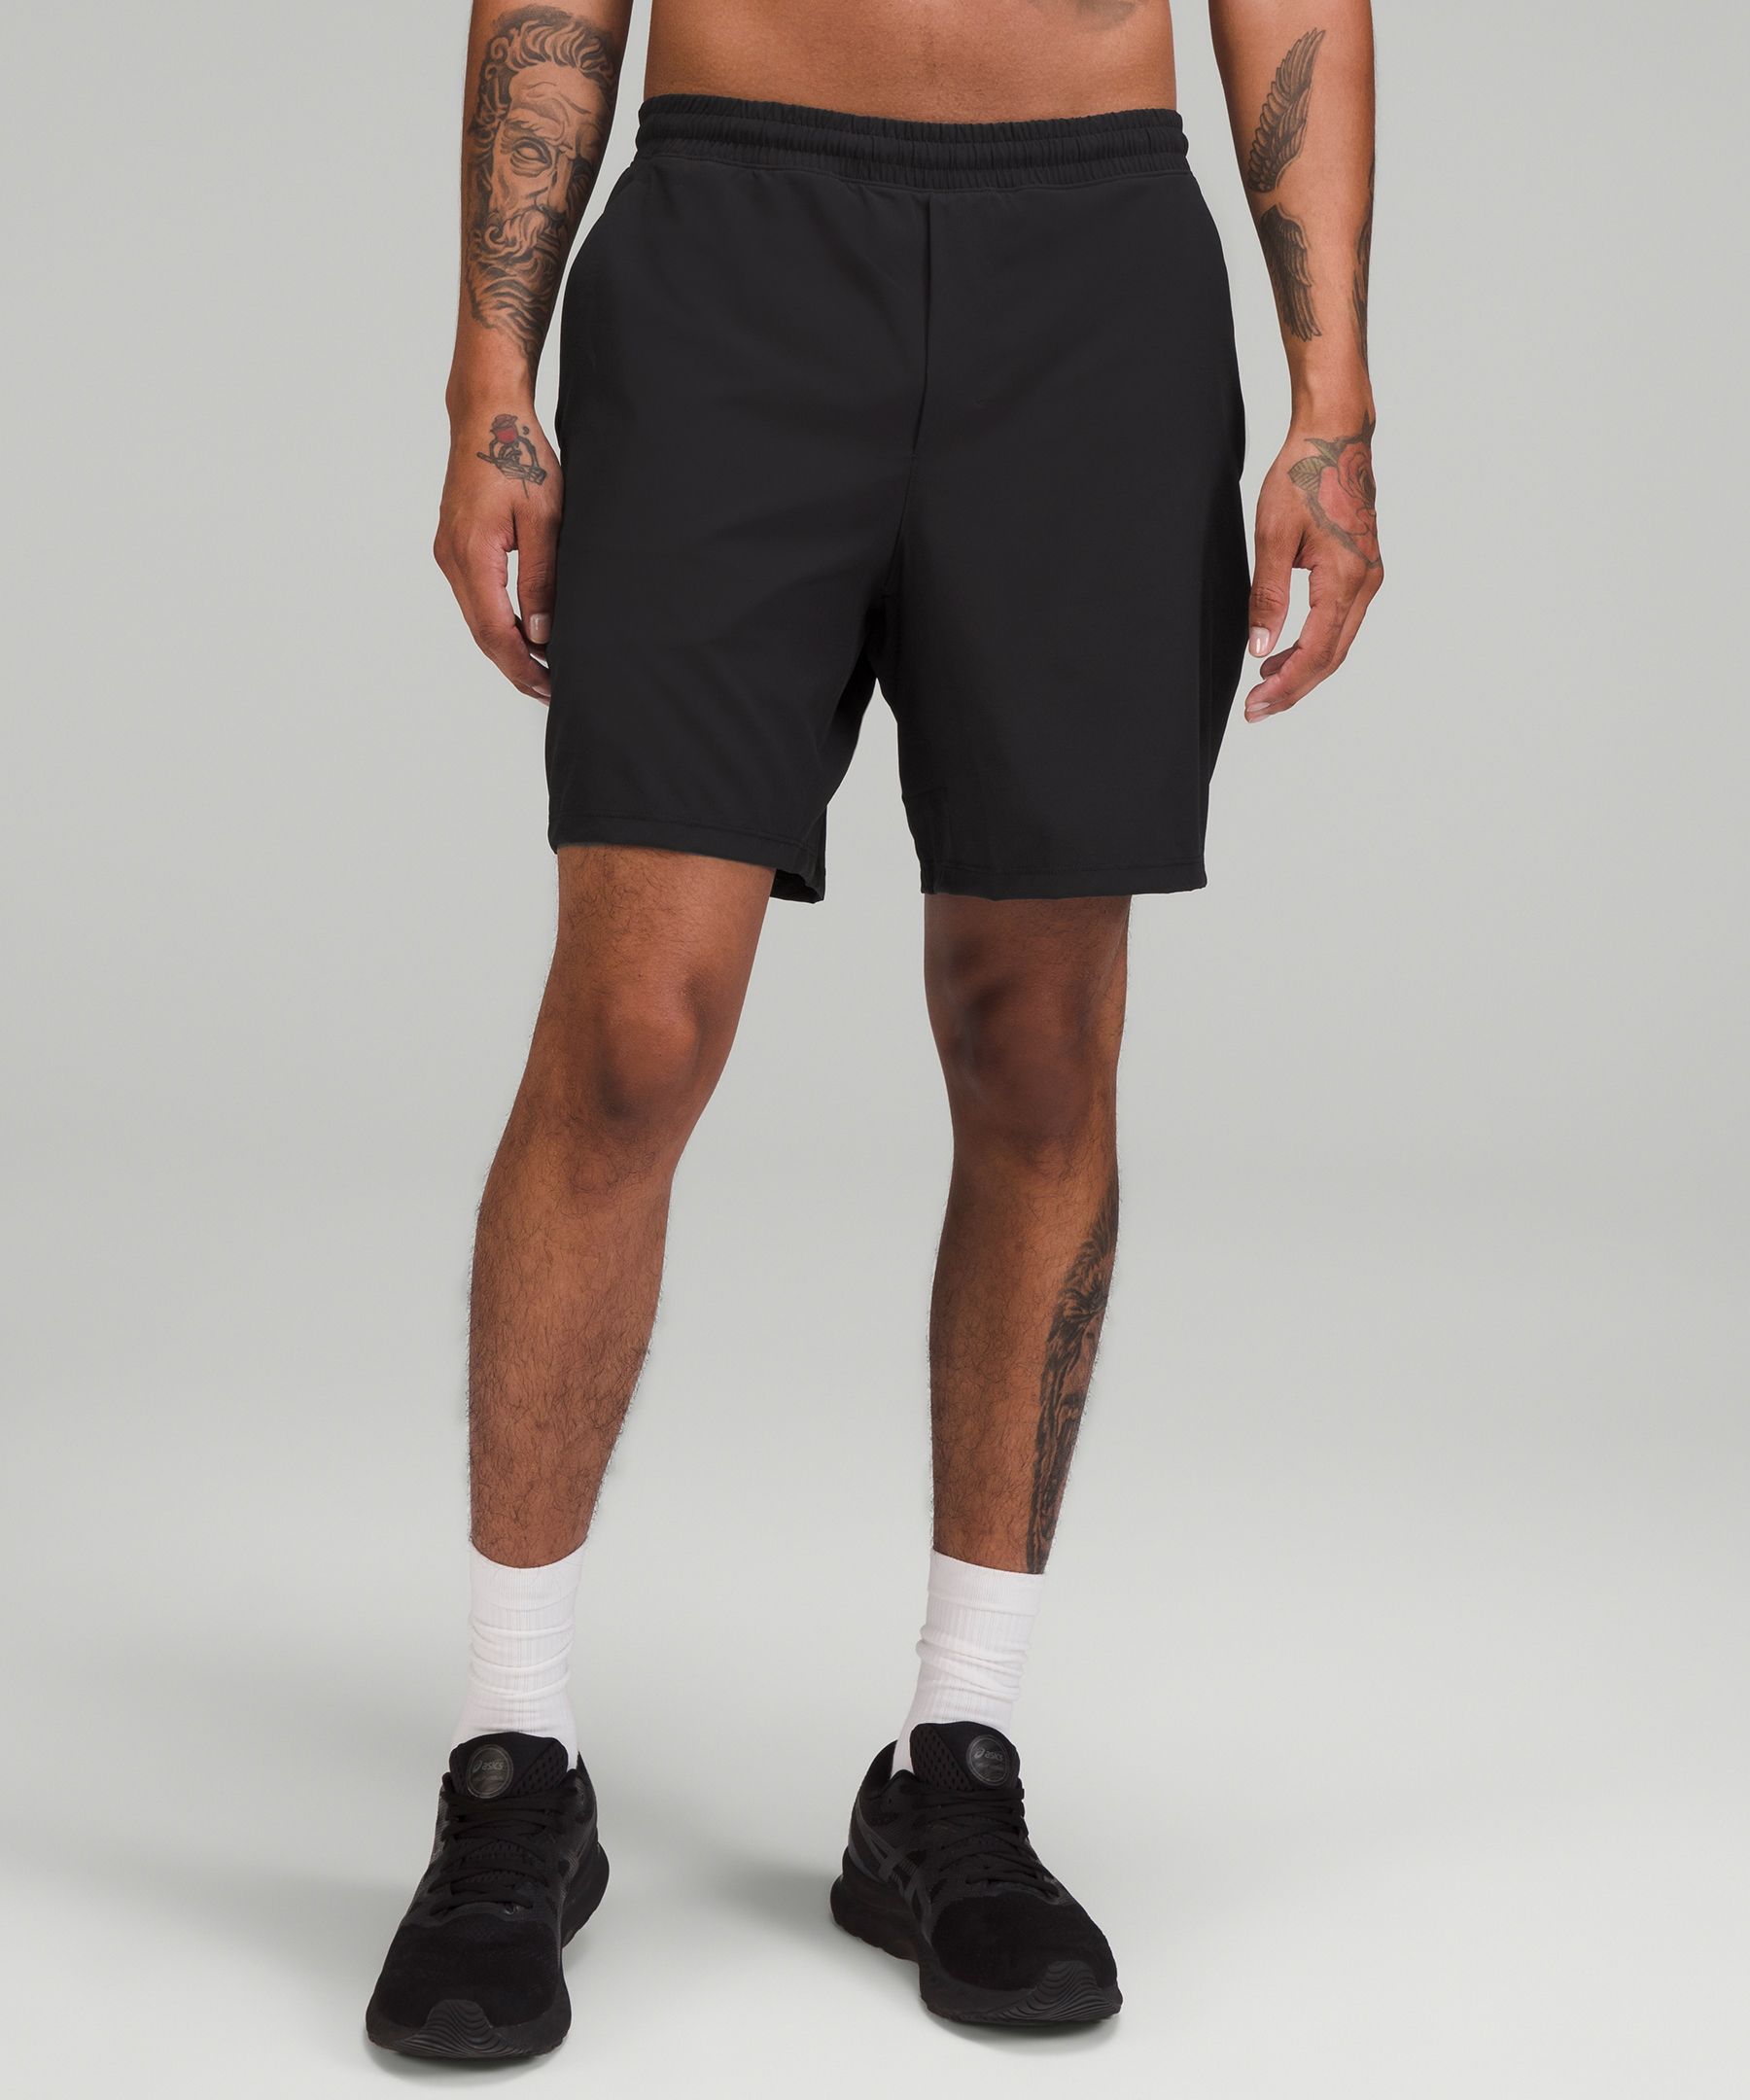 lululemon black shorts